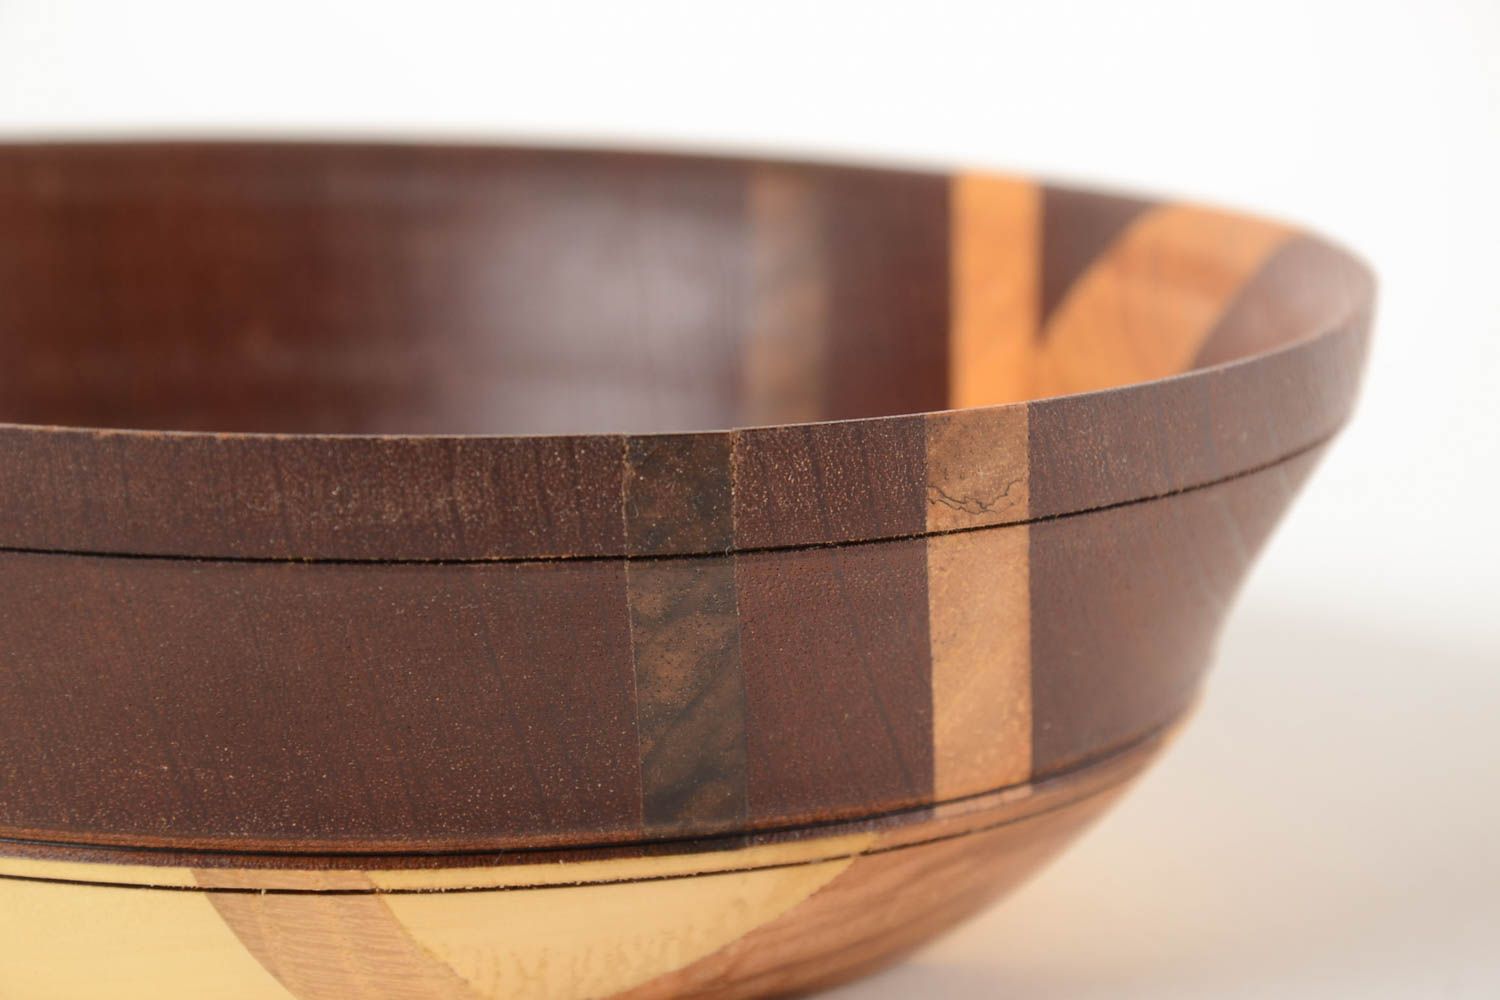 Beautiful handmade wooden bowl kitchen supplies kitchen design gift ideas photo 5